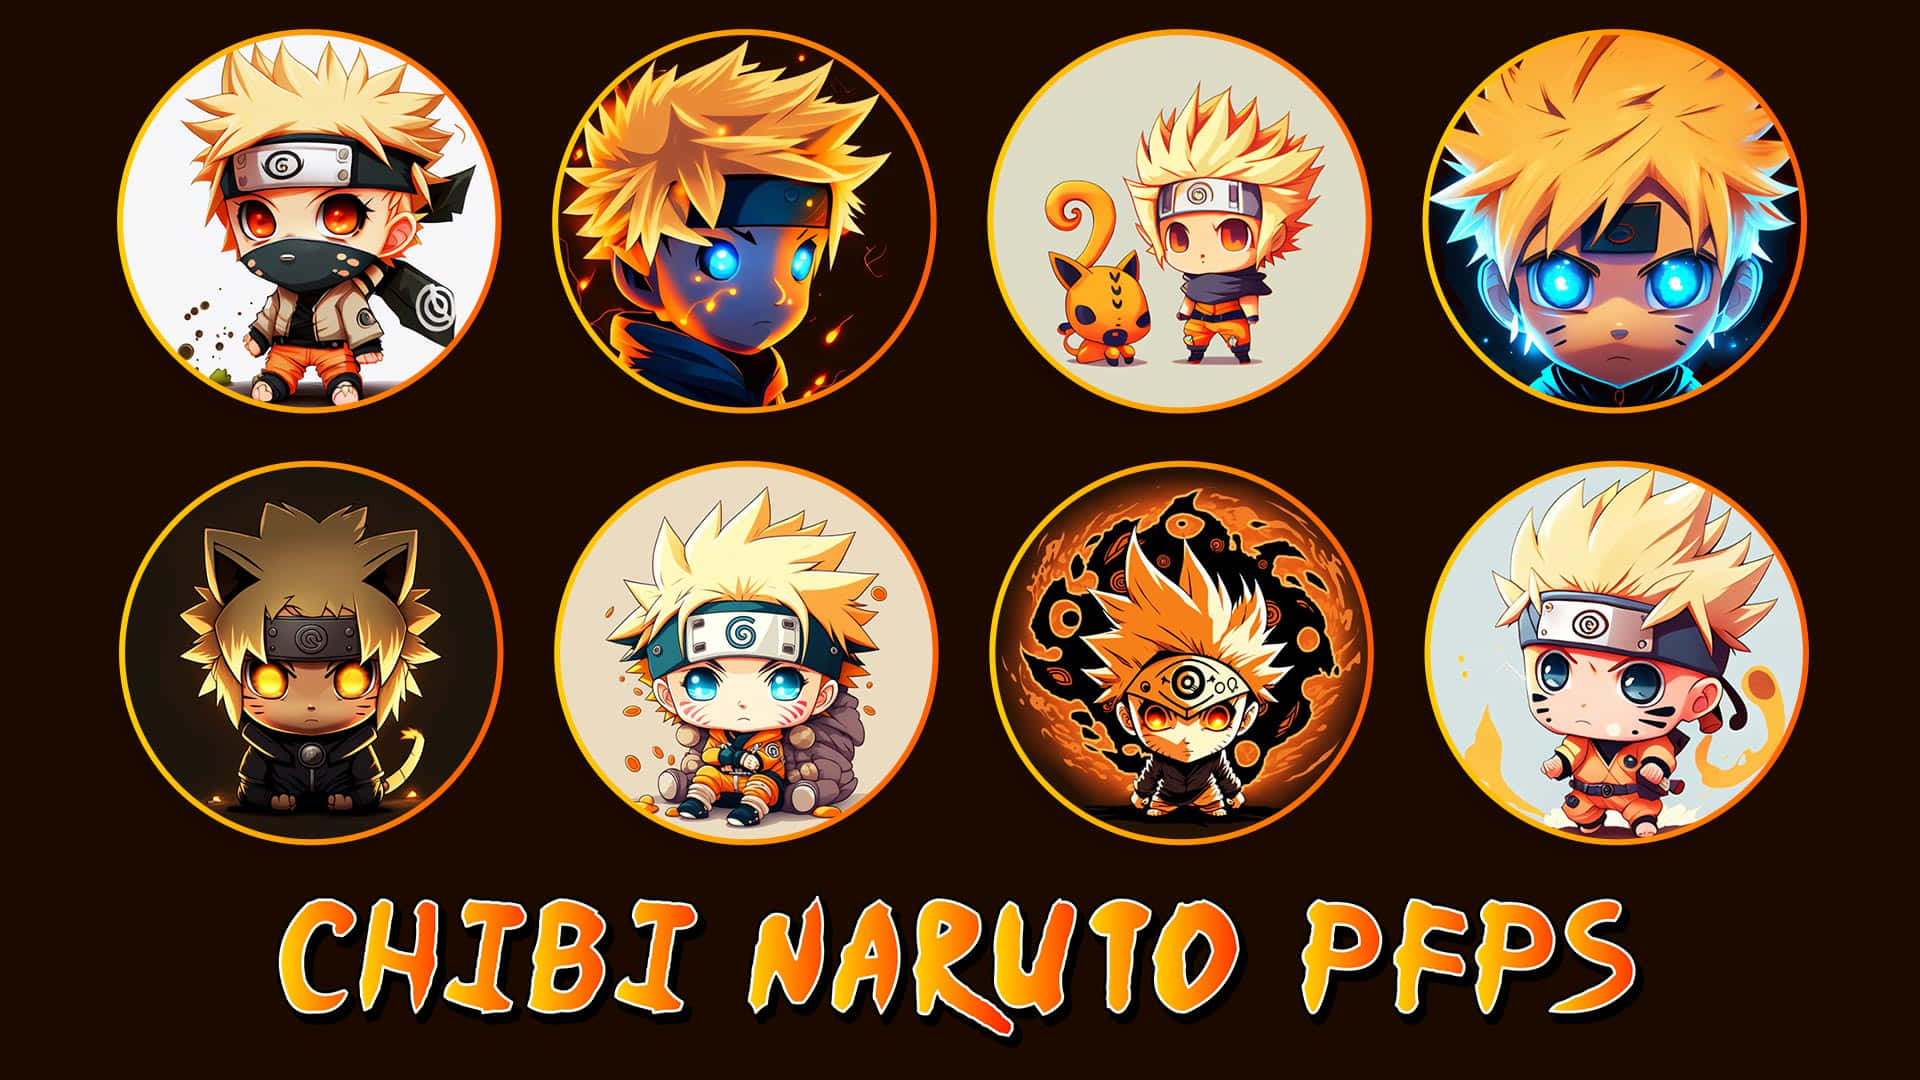 Naruto Chibi on Tumblr